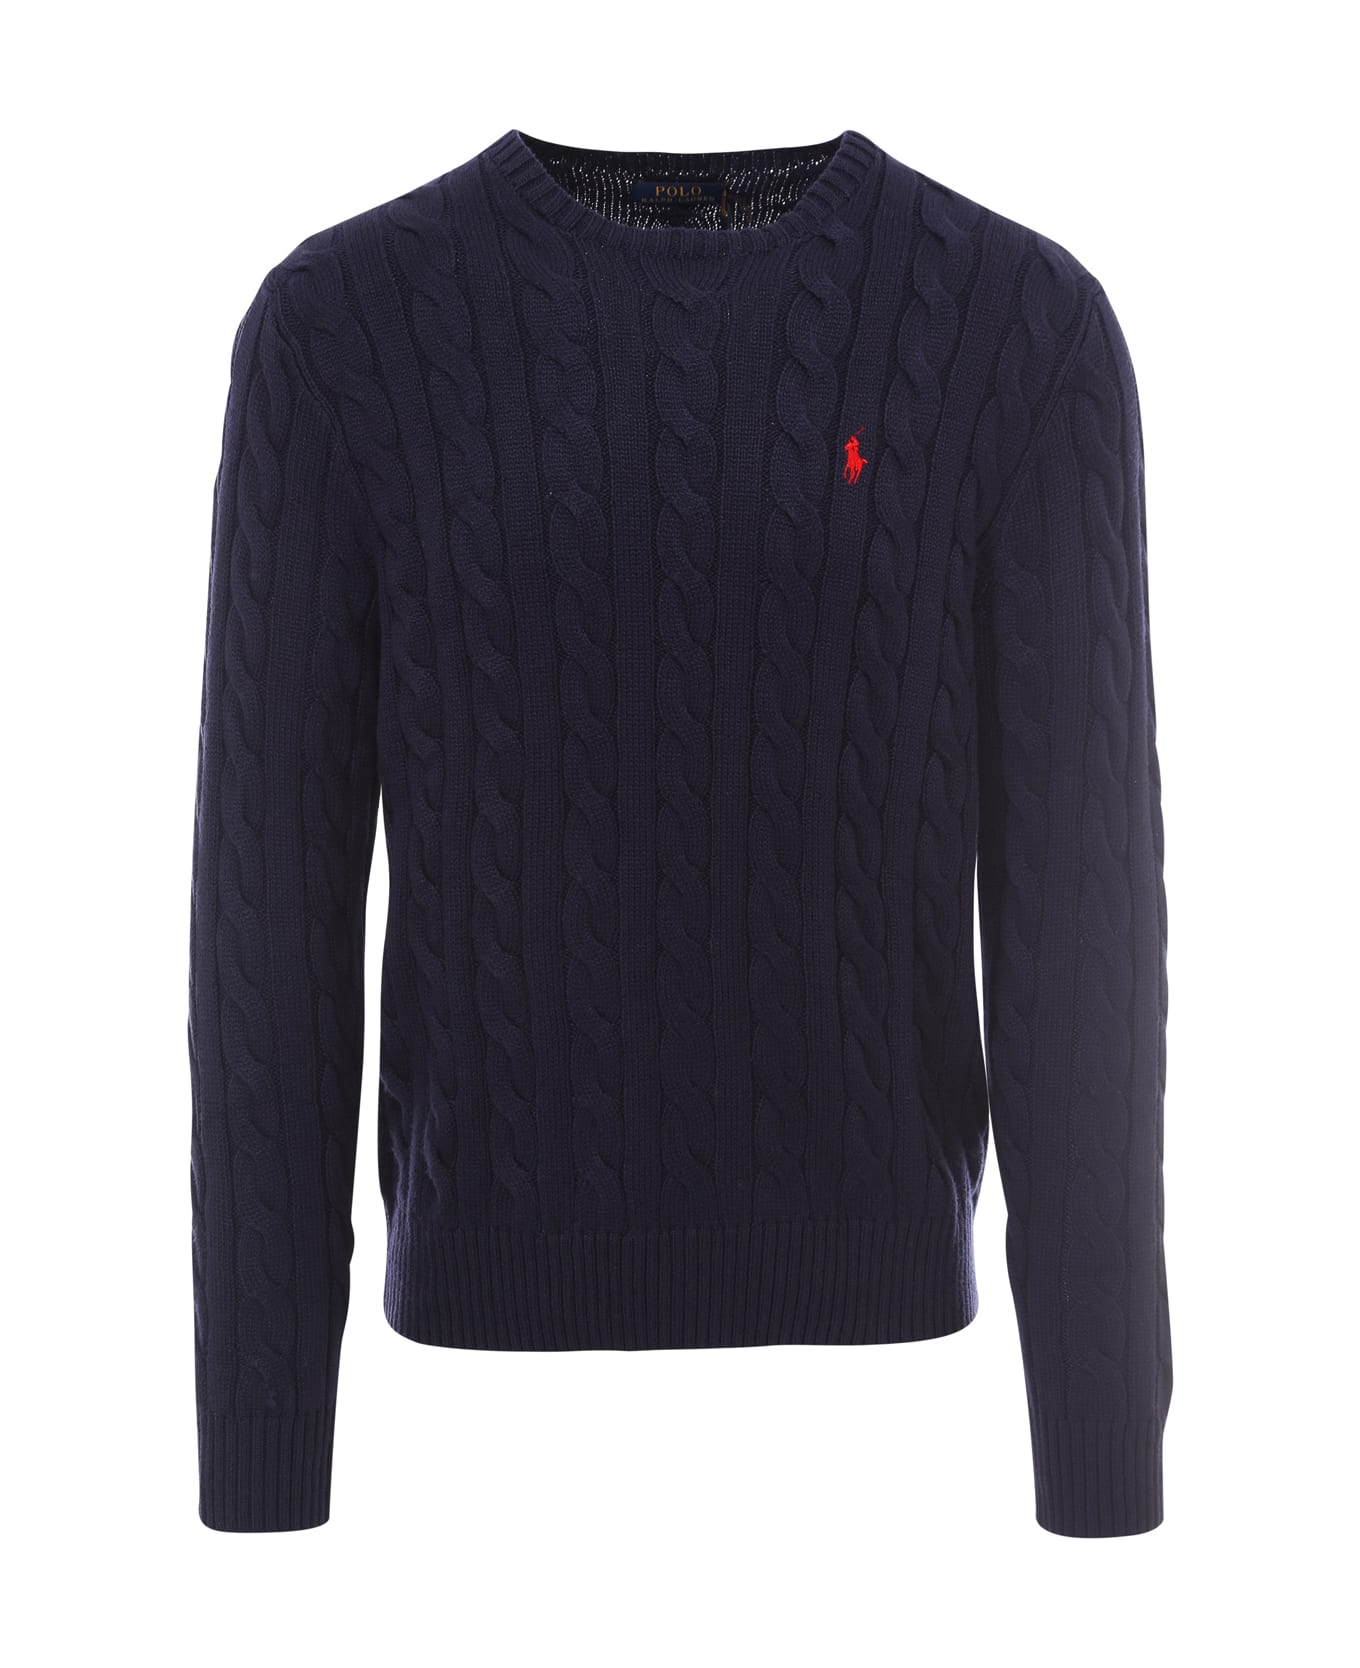 Ralph Lauren Sweater - blue